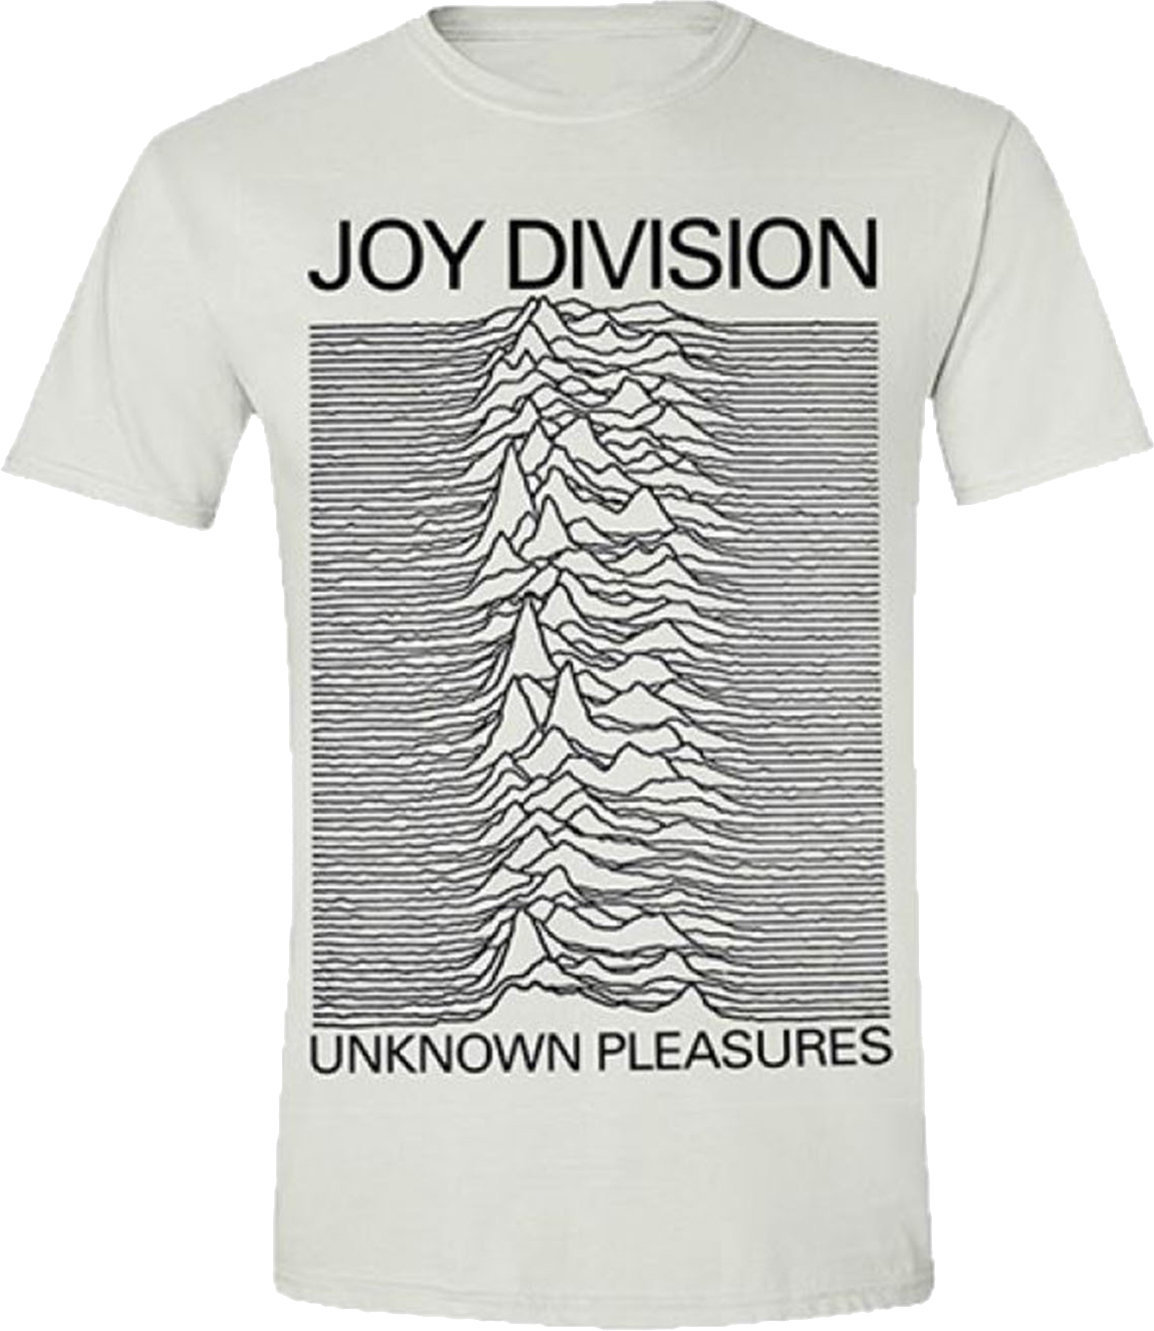 T-Shirt Joy Division T-Shirt Unknown Pleasures White 3XL